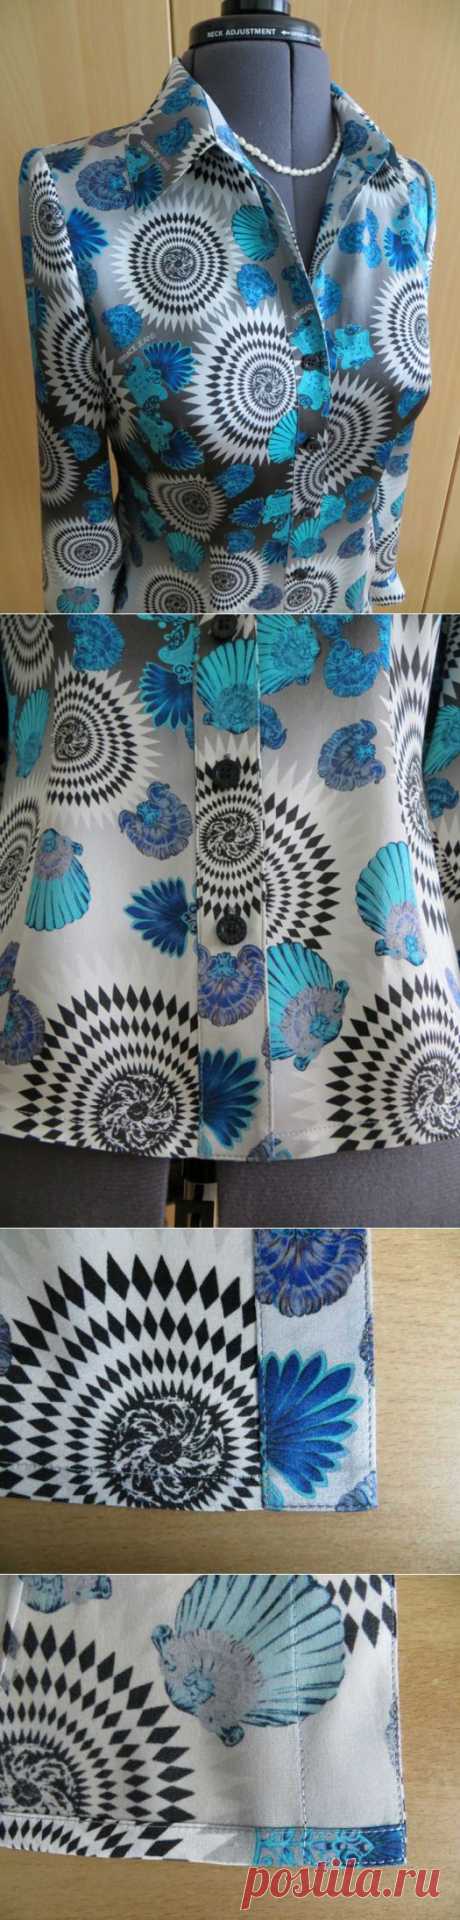 Один из вариантов обработки борта блузы планкой.